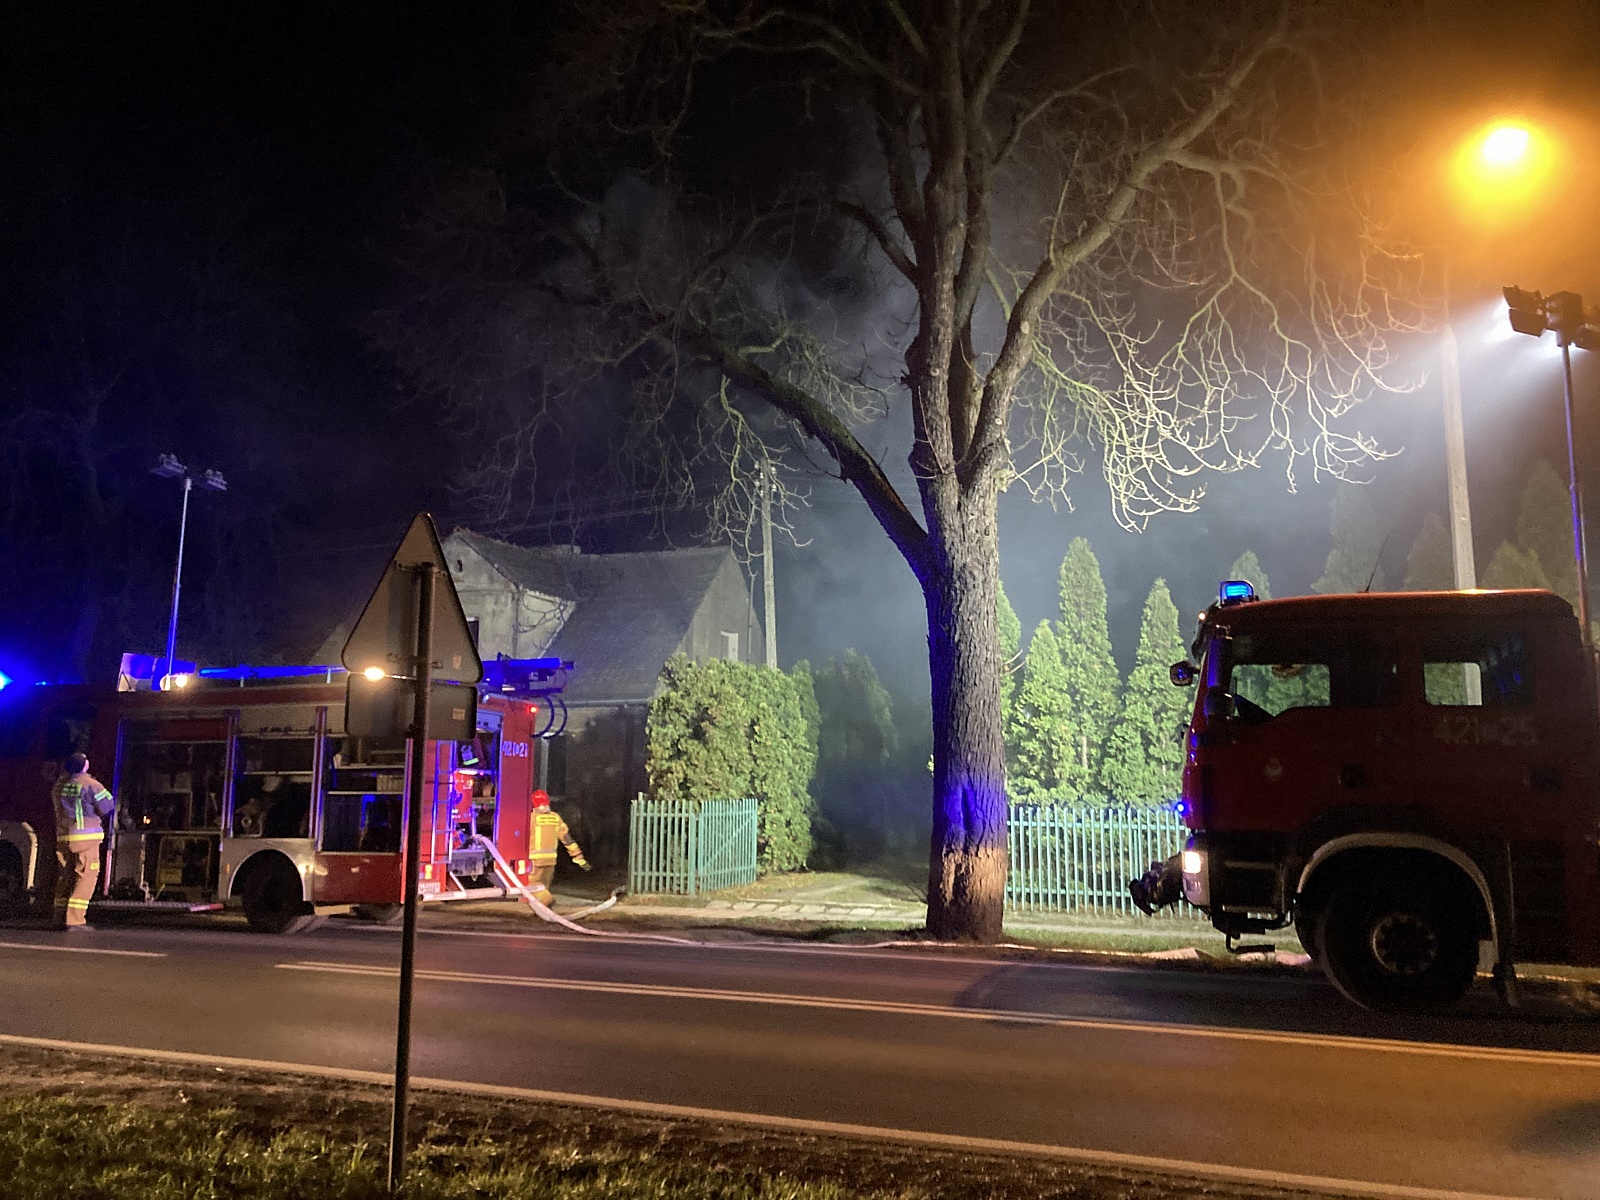 Pożar budynku przy ul. Wrzesińskiej w Gnieźnie